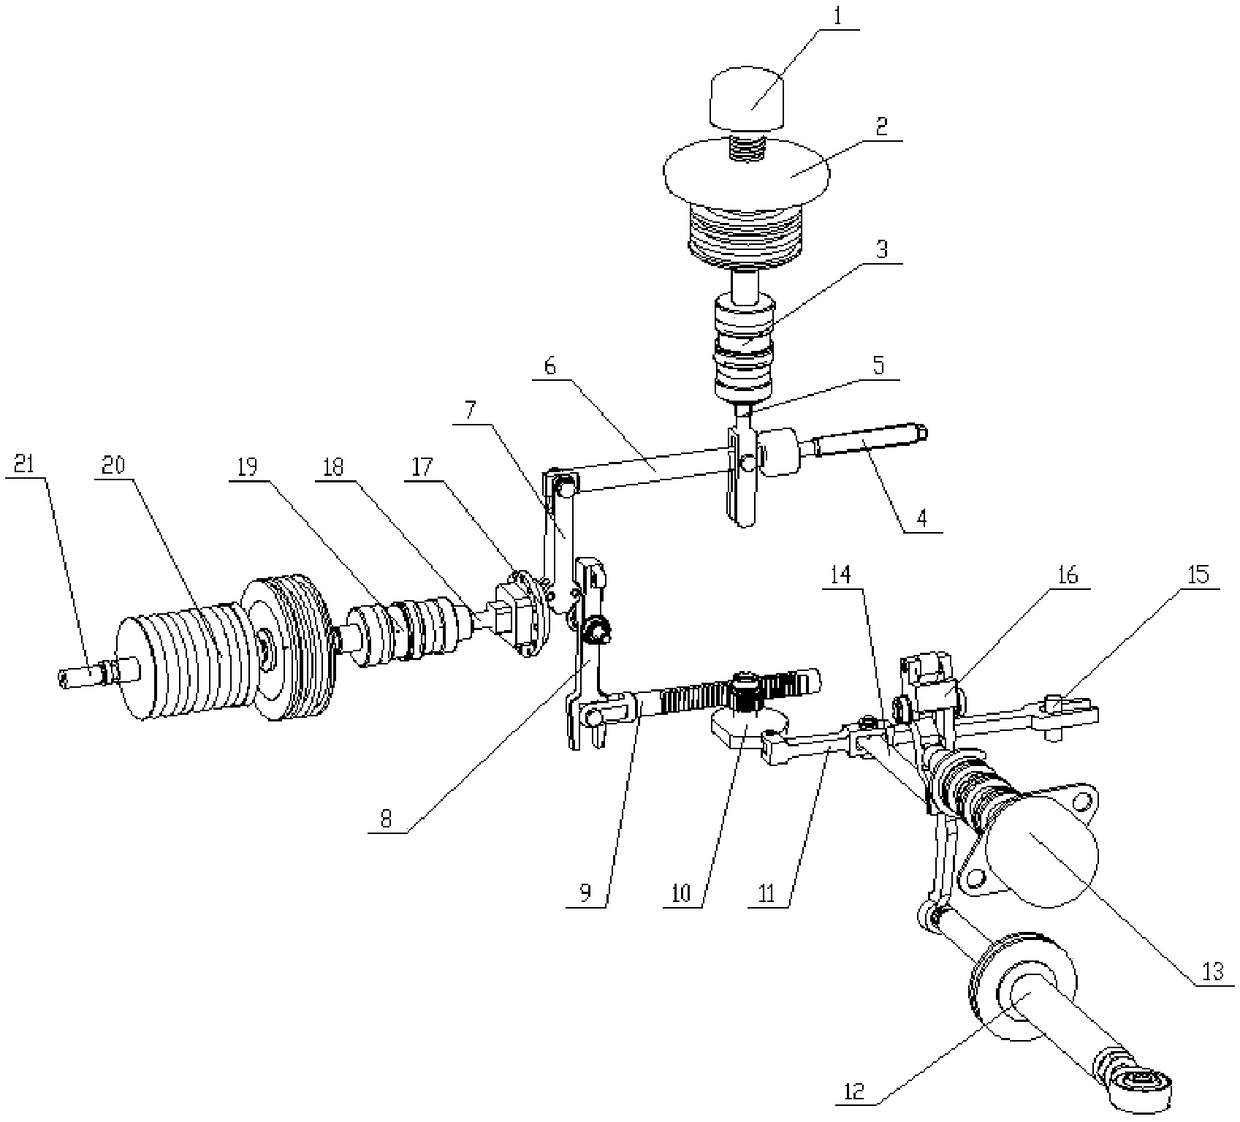 Guide blade regulator for pressure ratio control of gas compressor